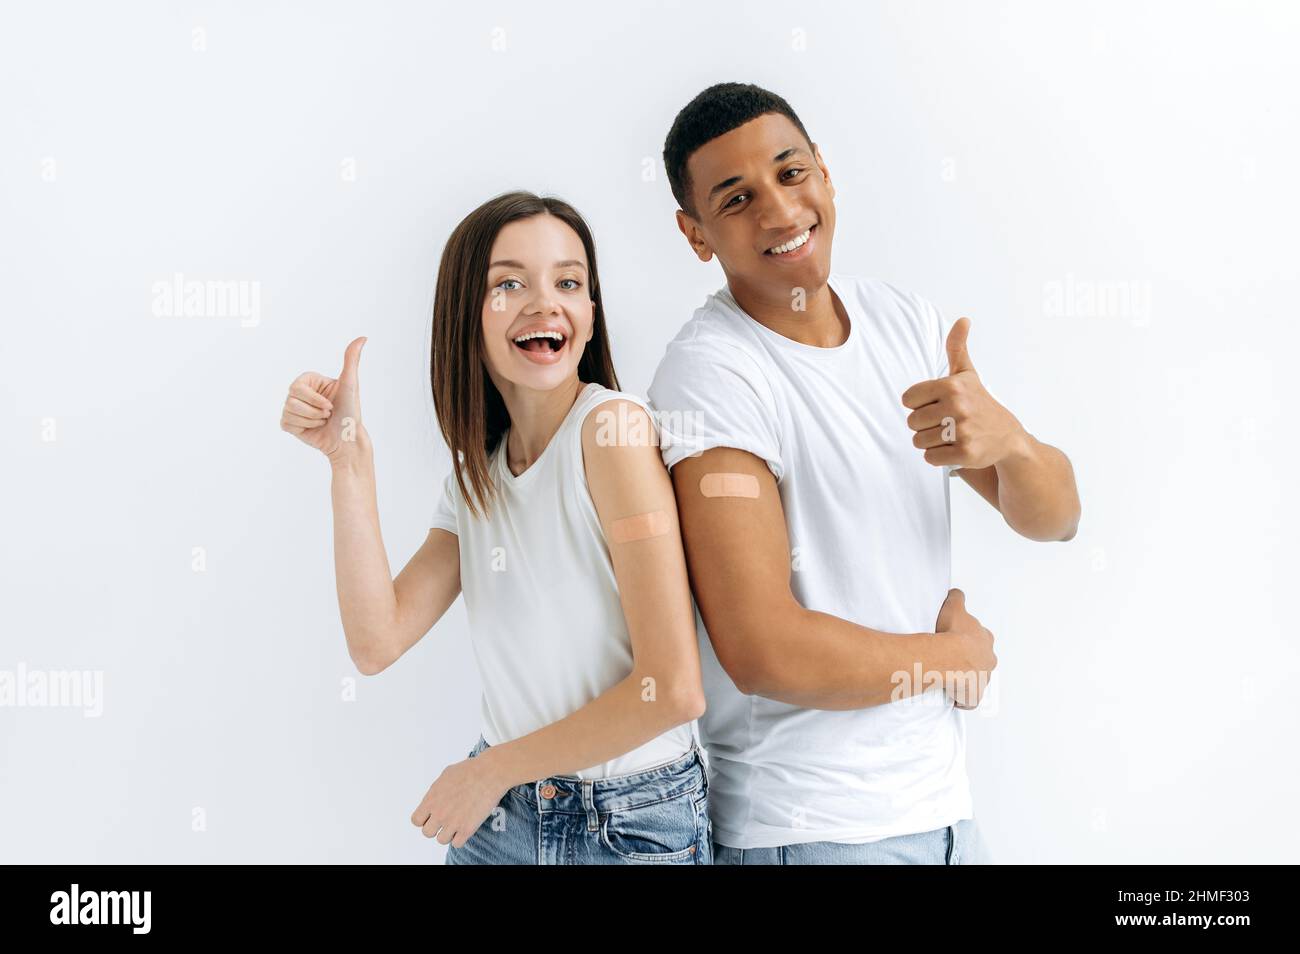 Fröhliches glückliches kaukasisches Mädchen und hispanischer Kerl, sind geimpft, stehen auf weißem Hintergrund mit medizinischen Pflaster auf ihren Schultern, schauen auf die Kamera, lächelnd, zeigen Daumen nach oben Geste Stockfoto